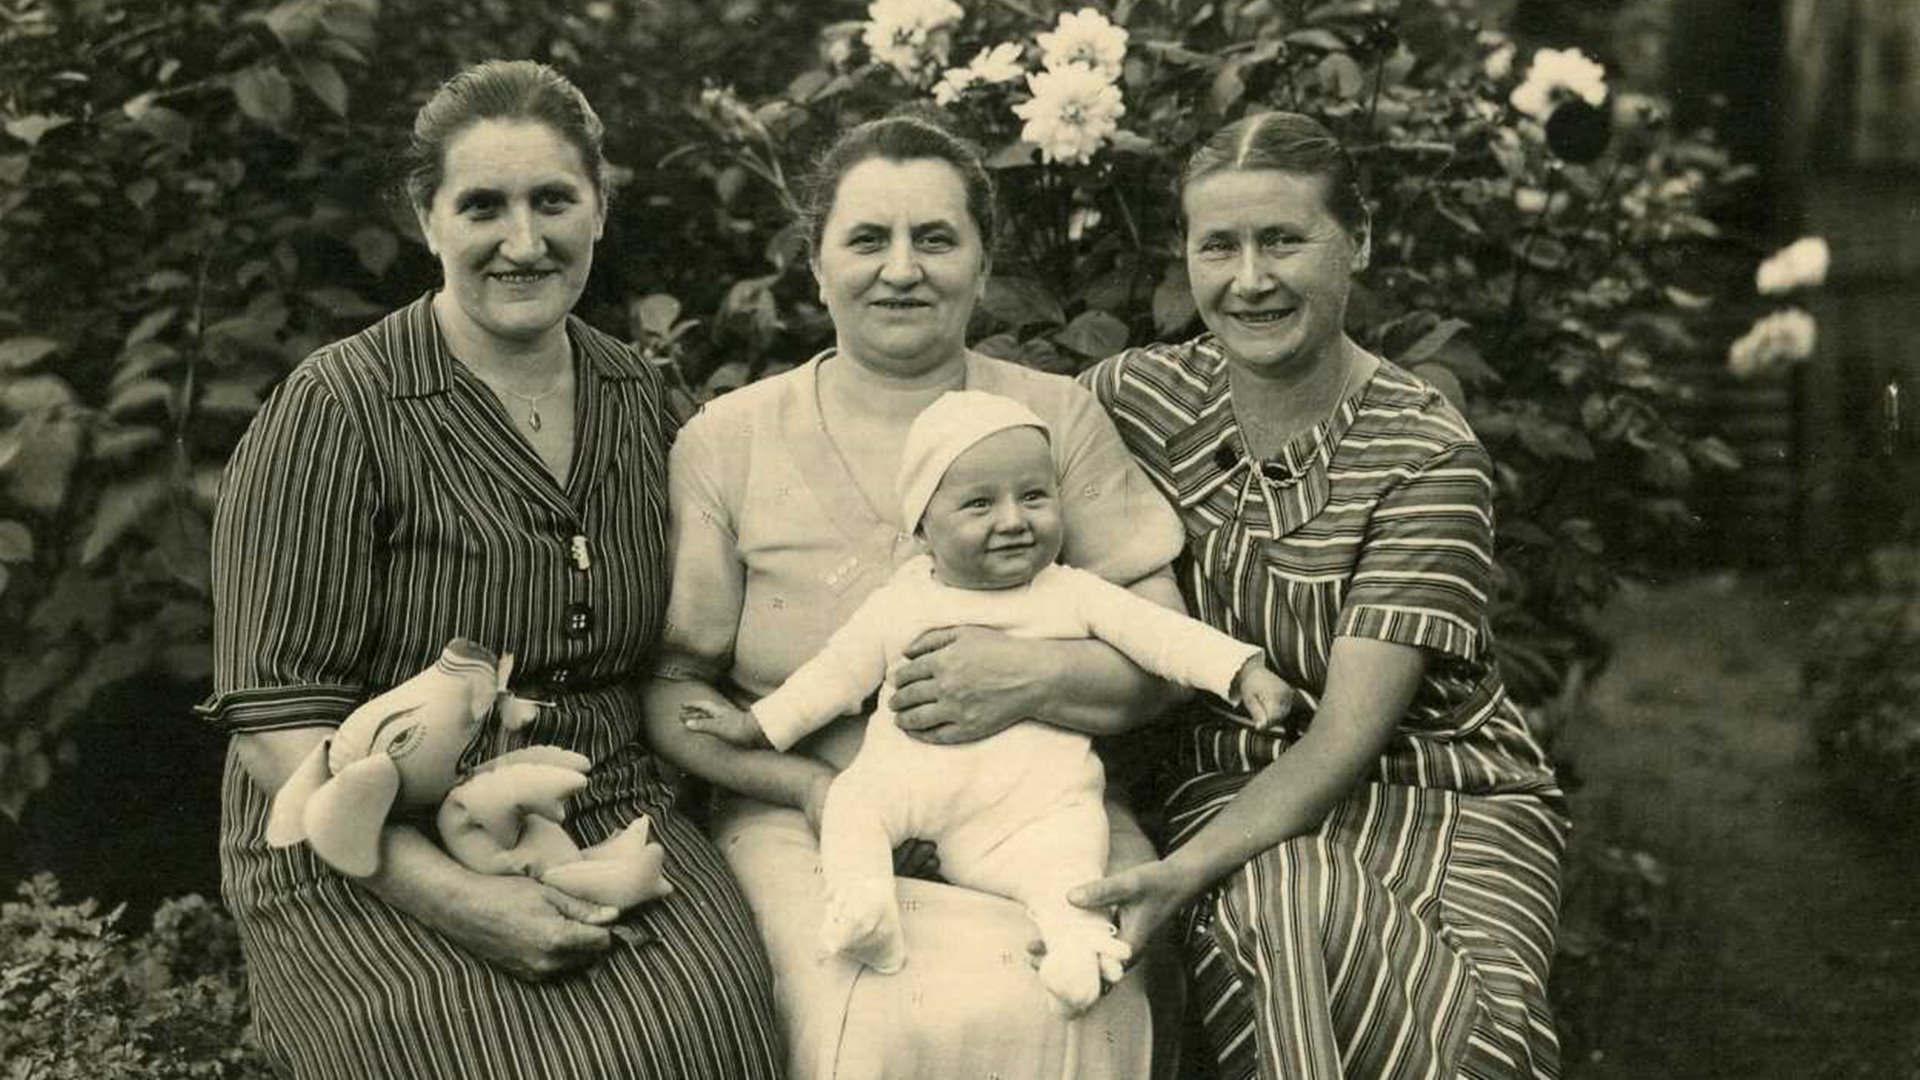 Zu sehen ist eine alte Schwarzweiß-Fotoaufnahme mit drei Frauen, einem Kind auf dem Schoß und ein Stofftier. Die linke Frau auf dem Bild ist Marie Deutschmann im Jahr 1936.